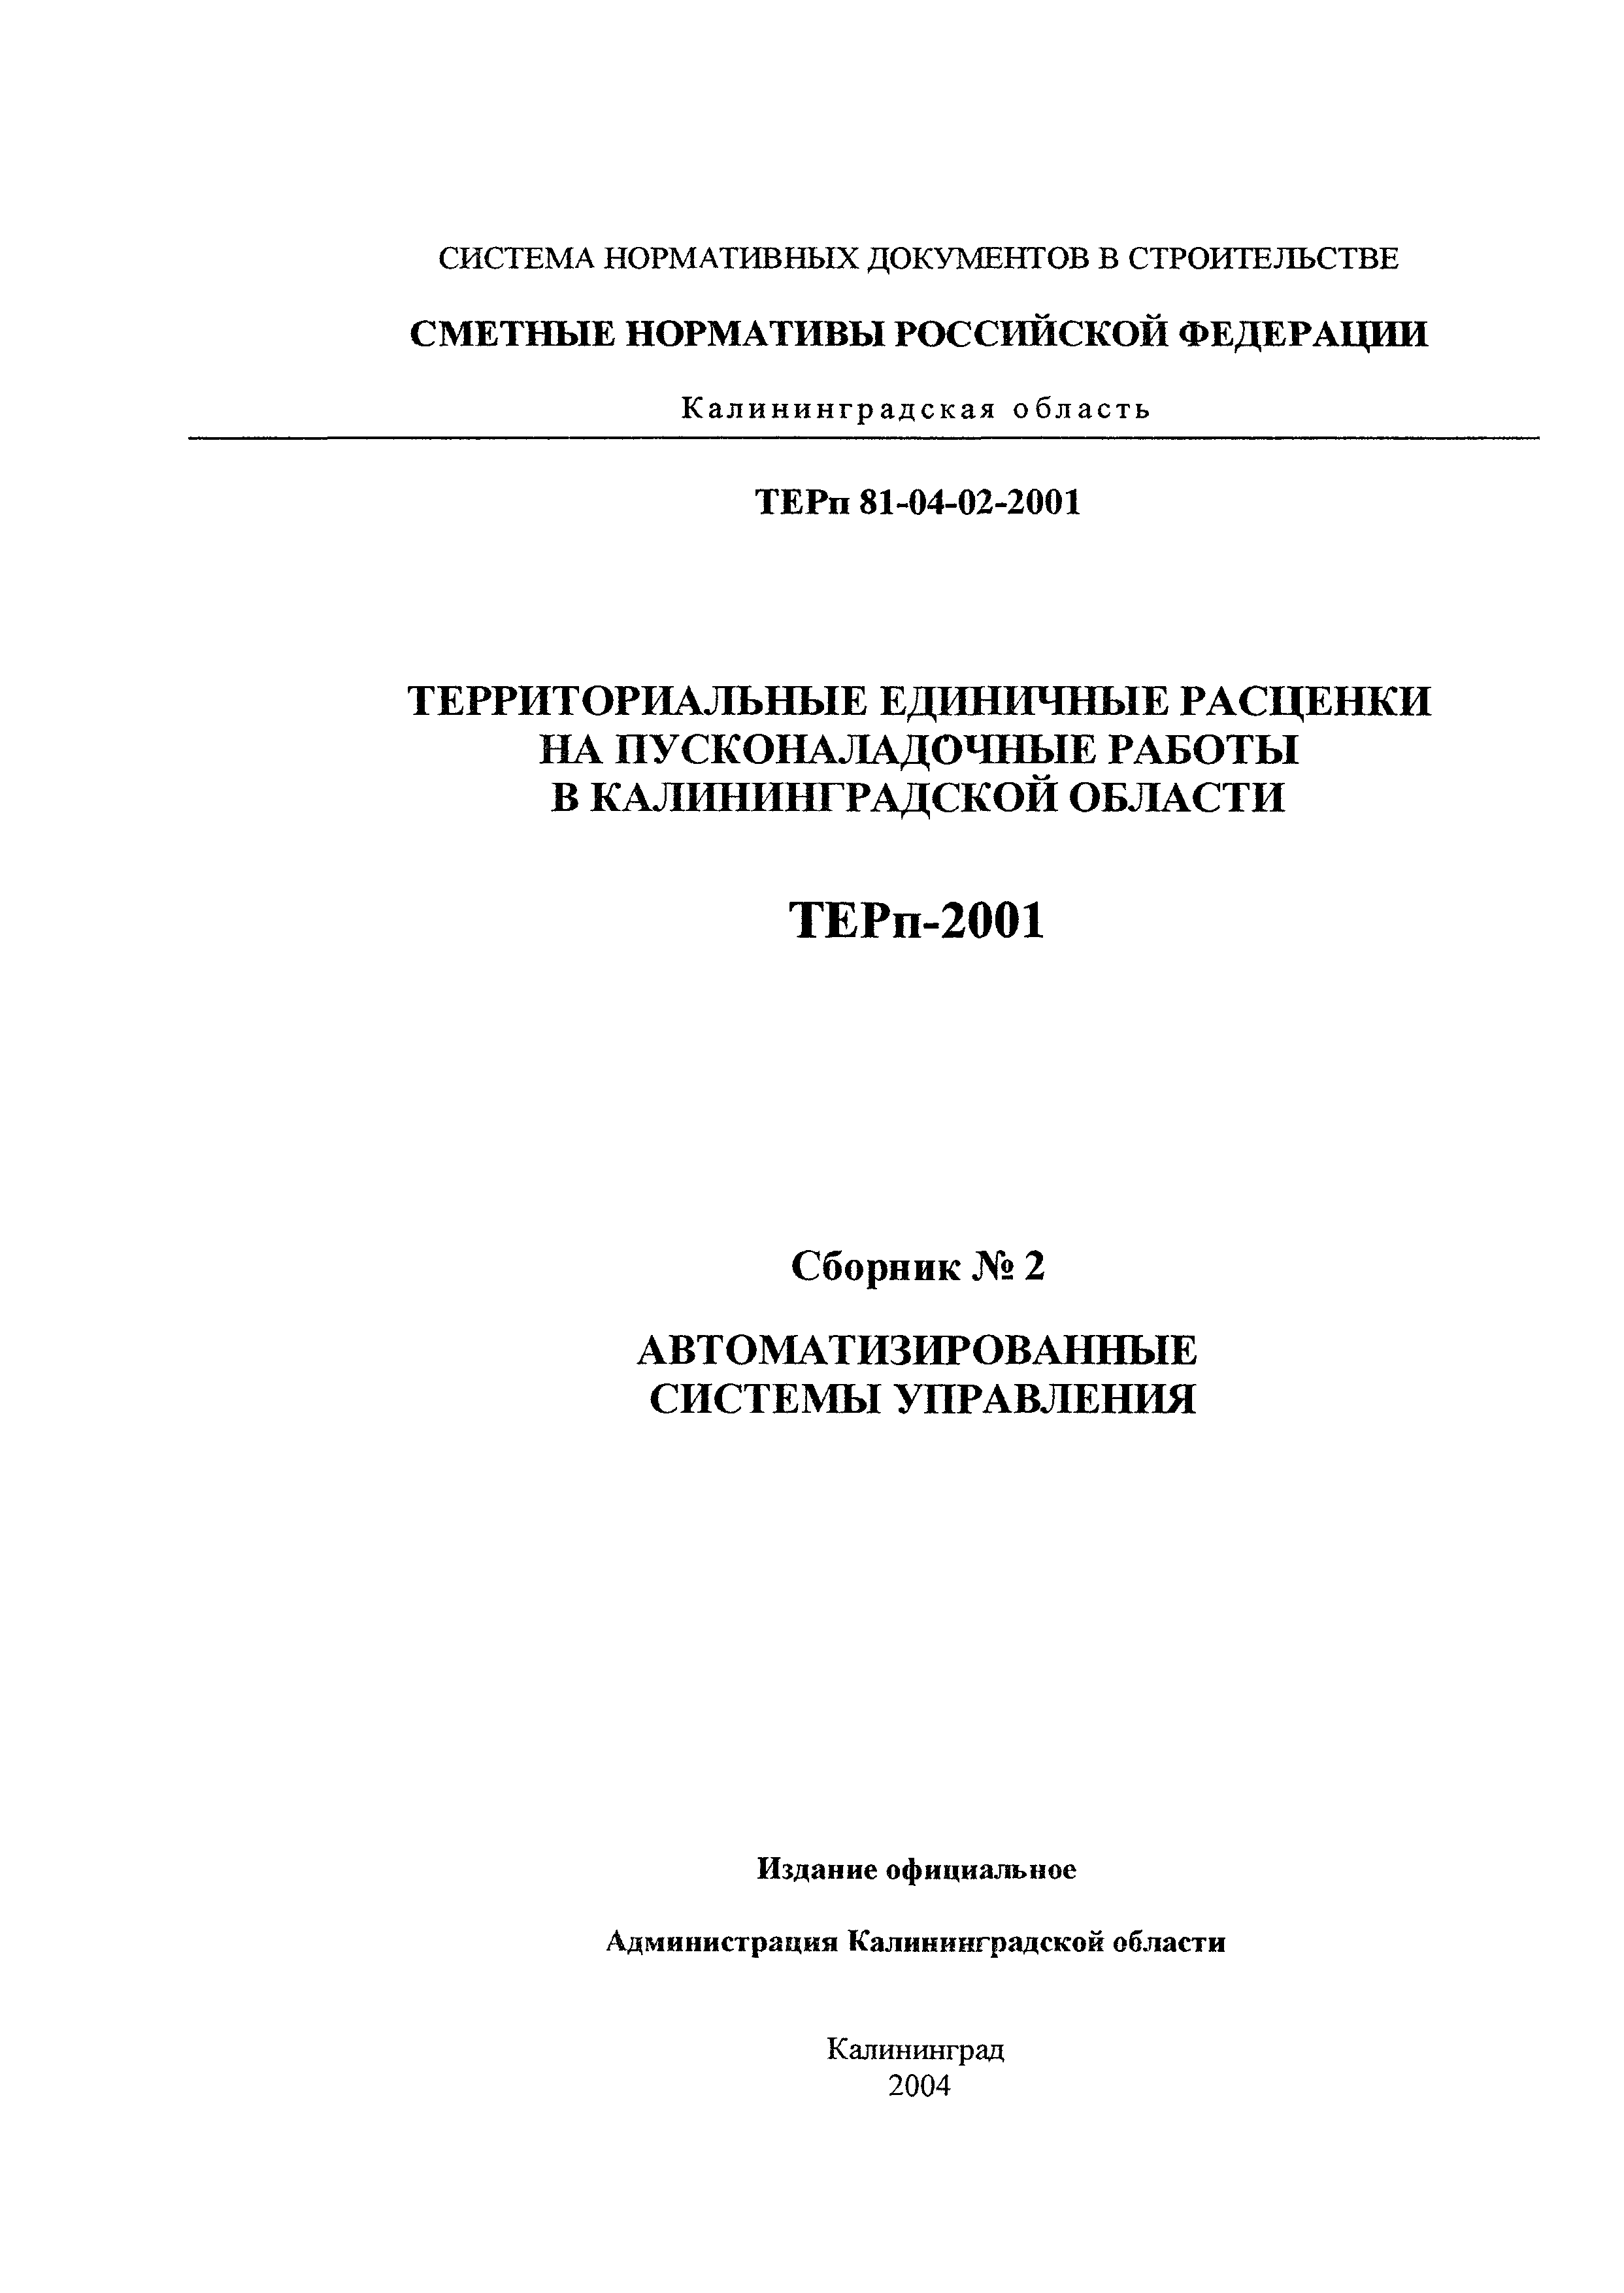 ТЕРп Калининградской области 2001-02